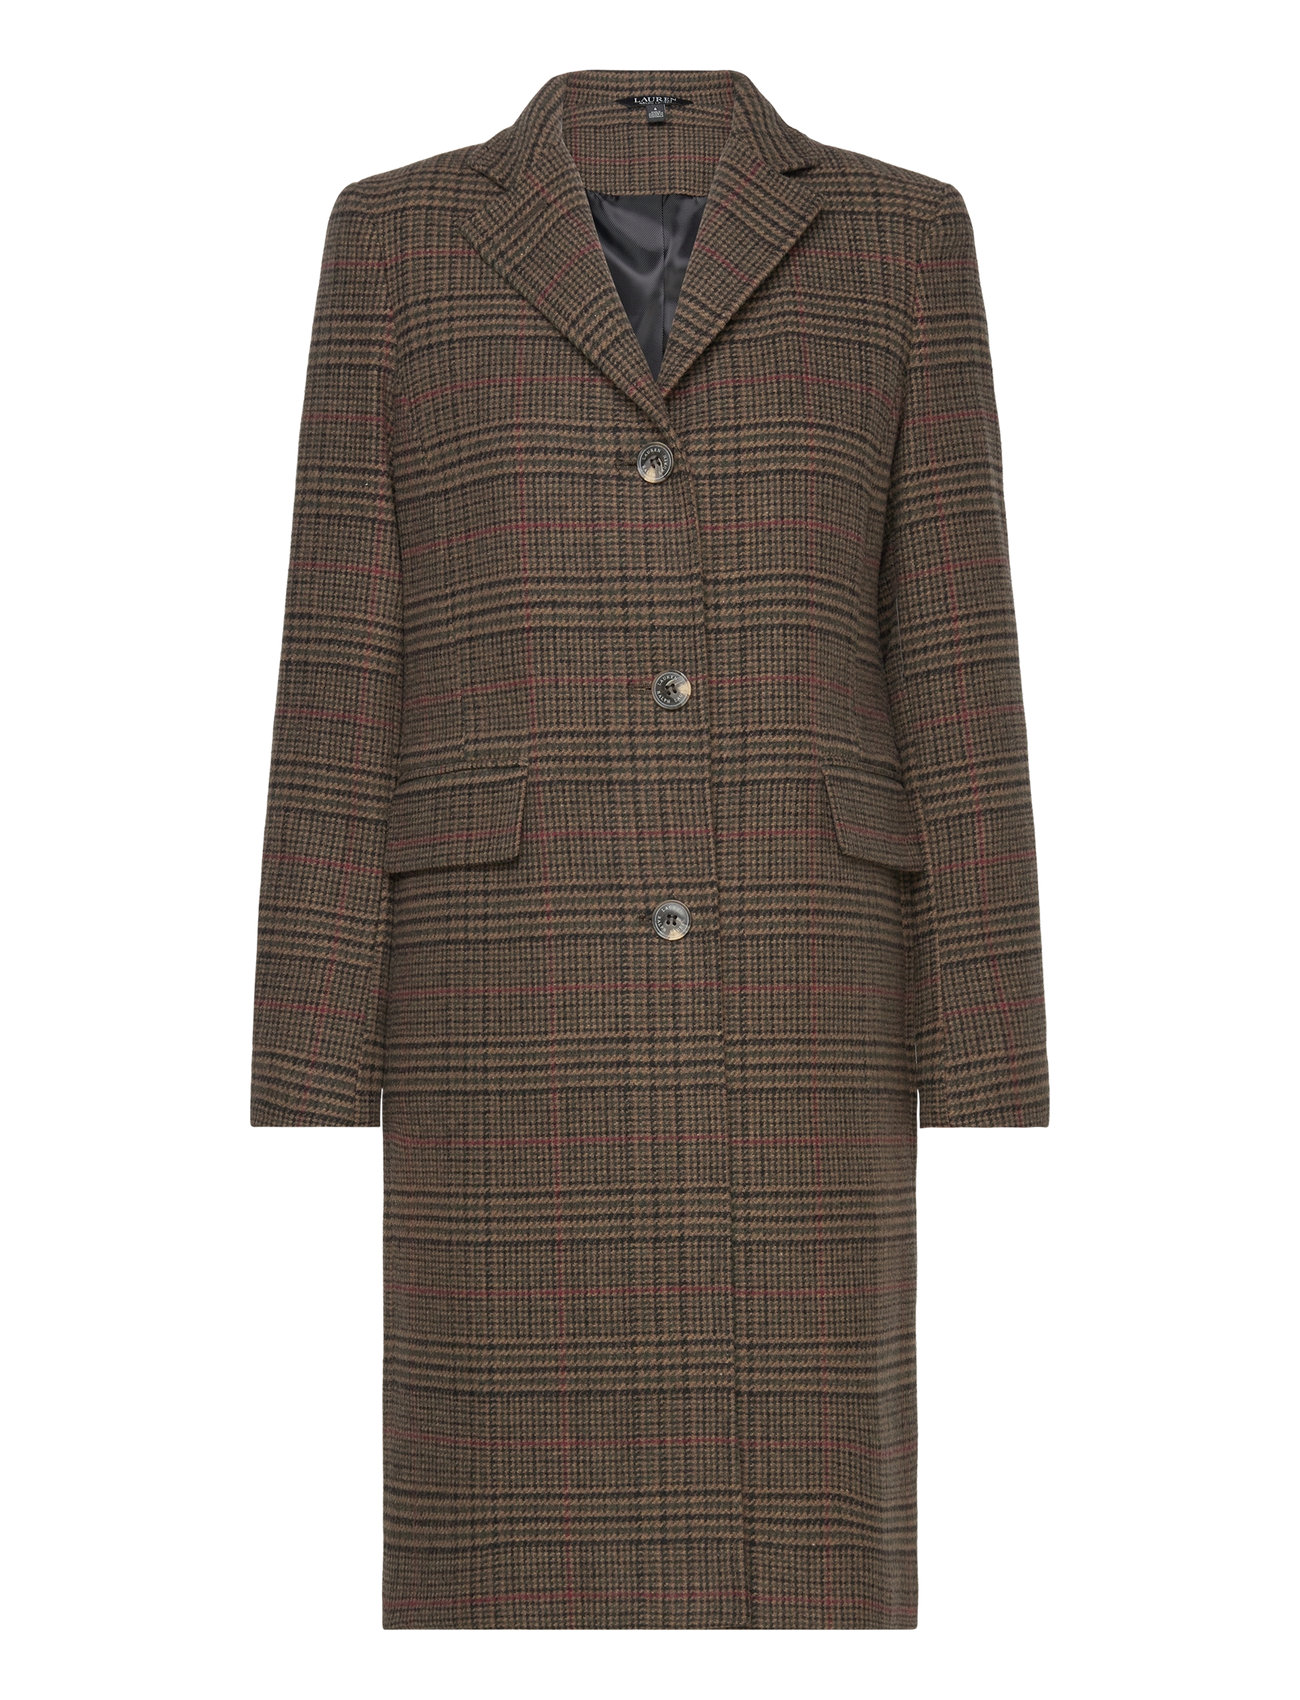 Lauren Ralph Lauren Sb Reefer-lined-coat - 291.85 €. Buy Wool Jackets from  Lauren Ralph Lauren online at . Fast delivery and easy returns